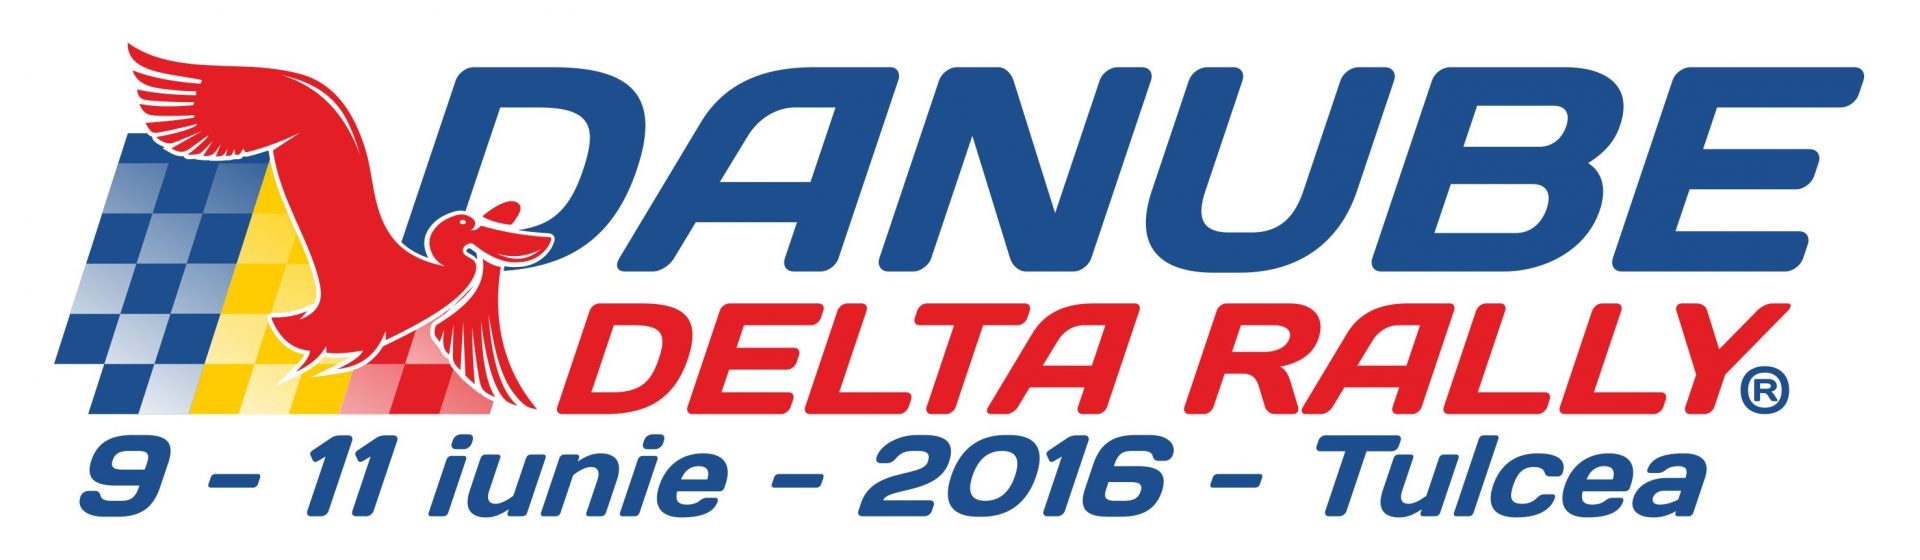 Program inchidere circulatie – Danube Delta Rally? 2016